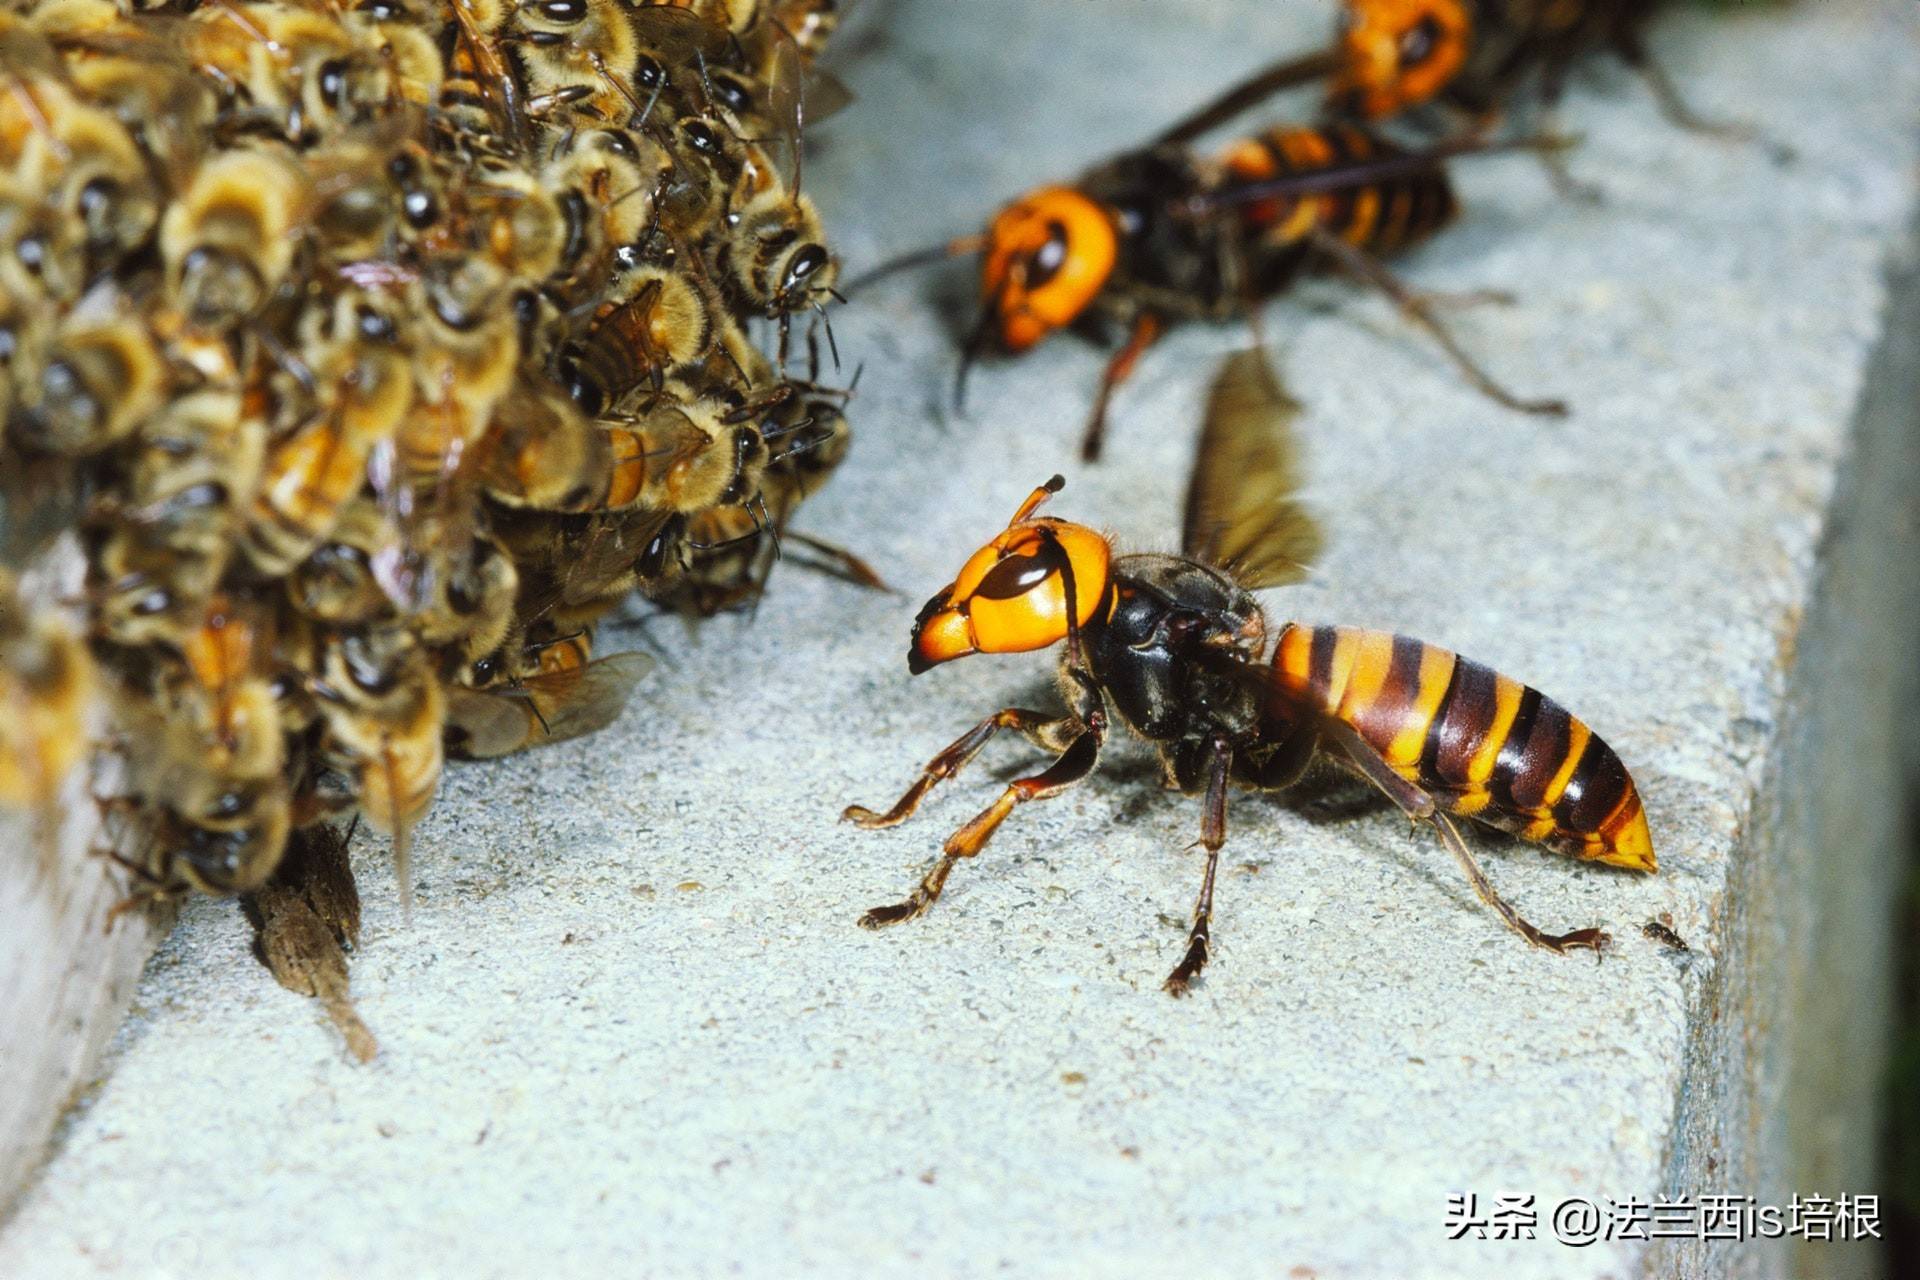 虎头蜂大战黄蜂图片